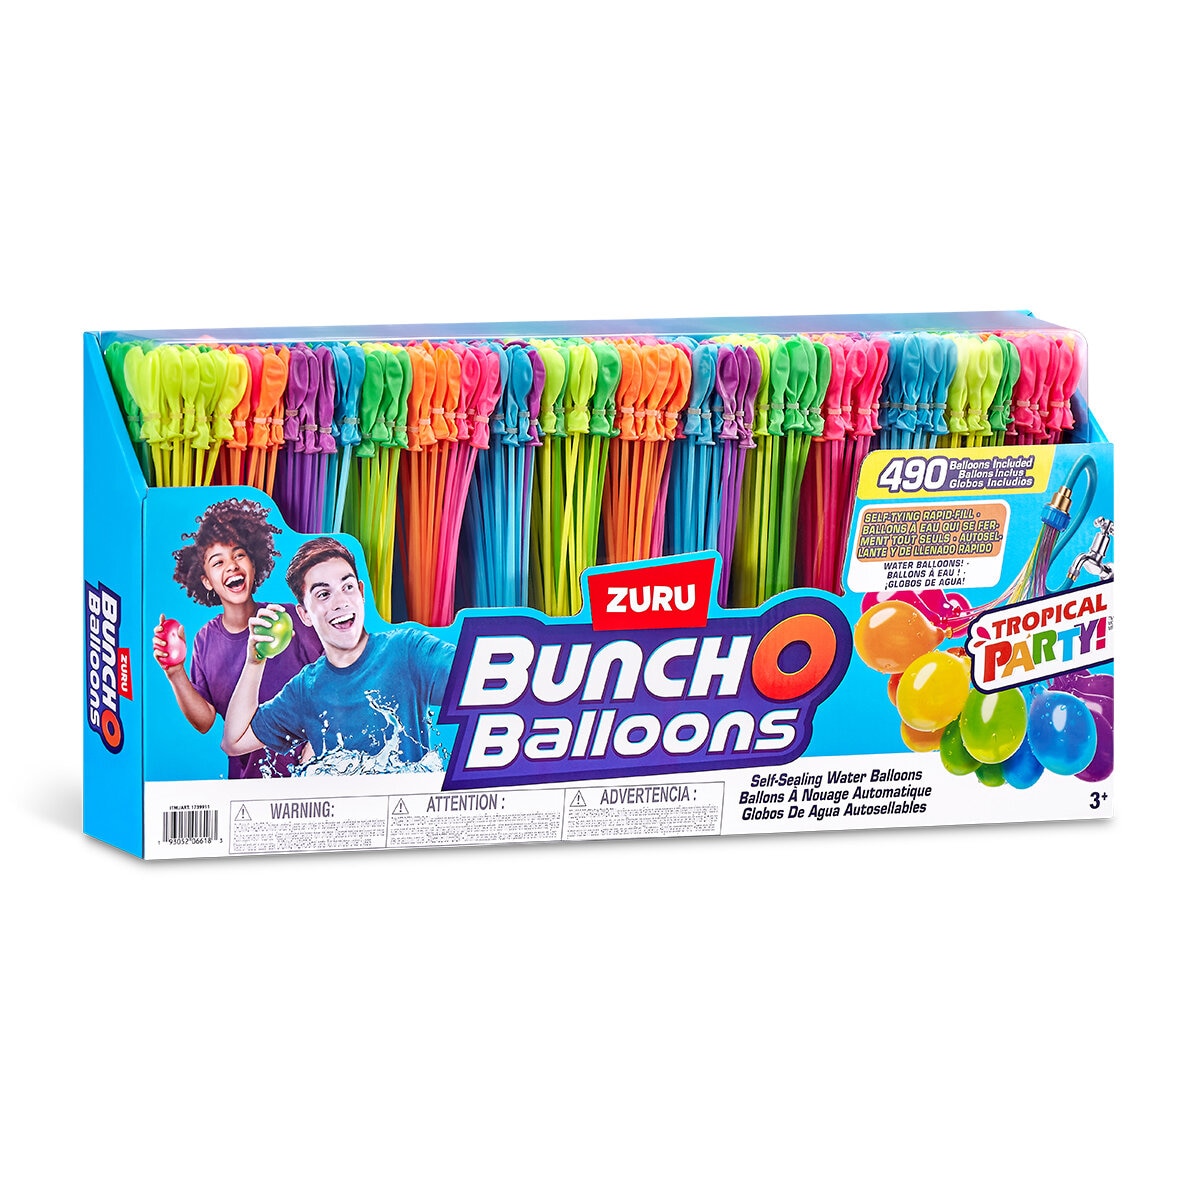 Bunch O Balloons Tropical Party 14pk 490 Globos de Agua 